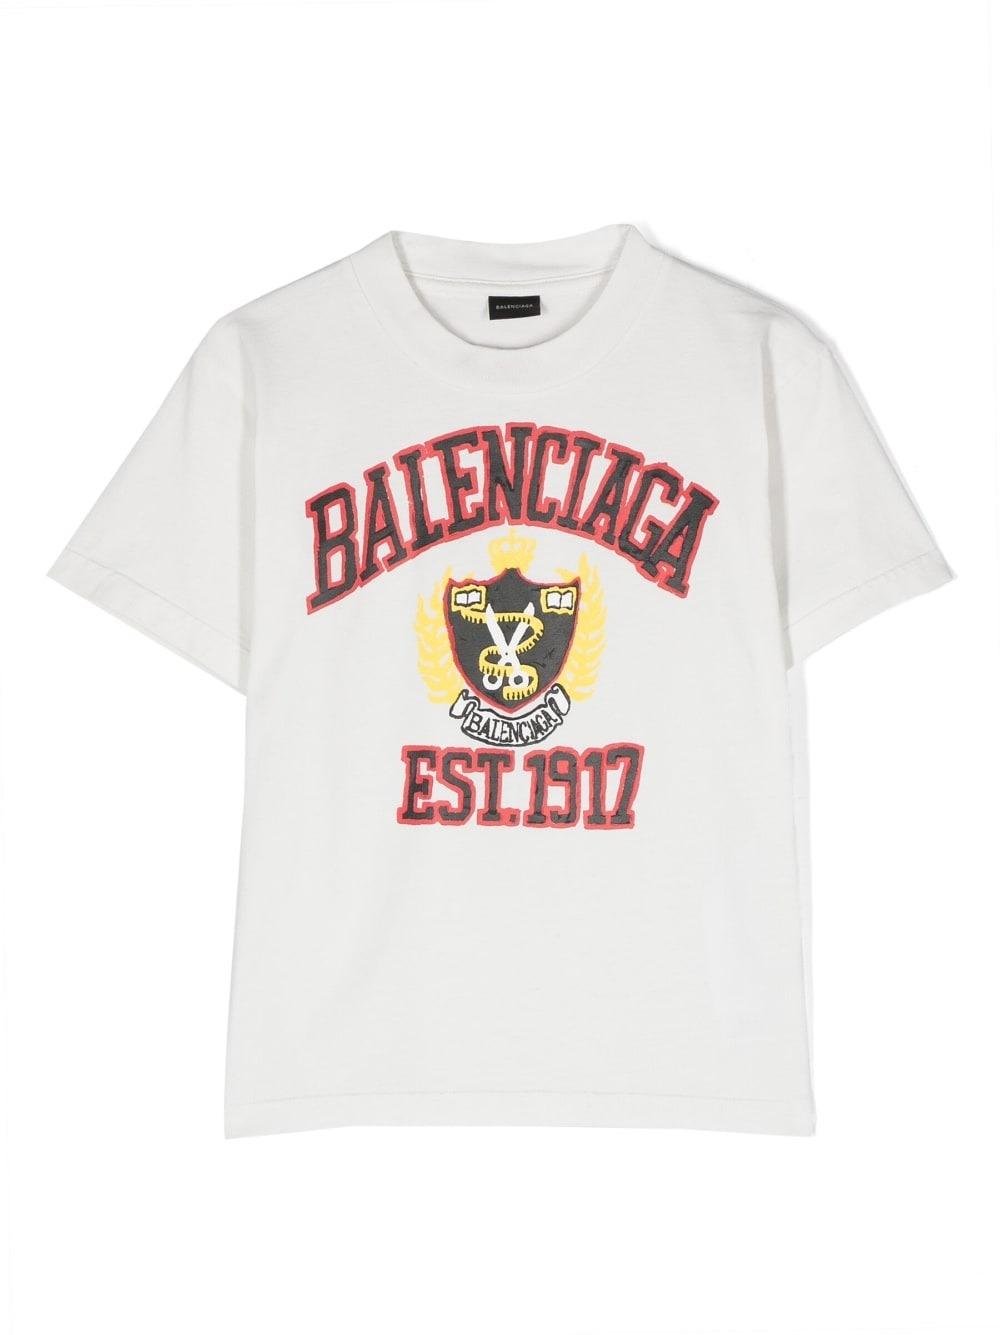 logoprint detail Tshirt  Balenciaga Kids  Eraldocom